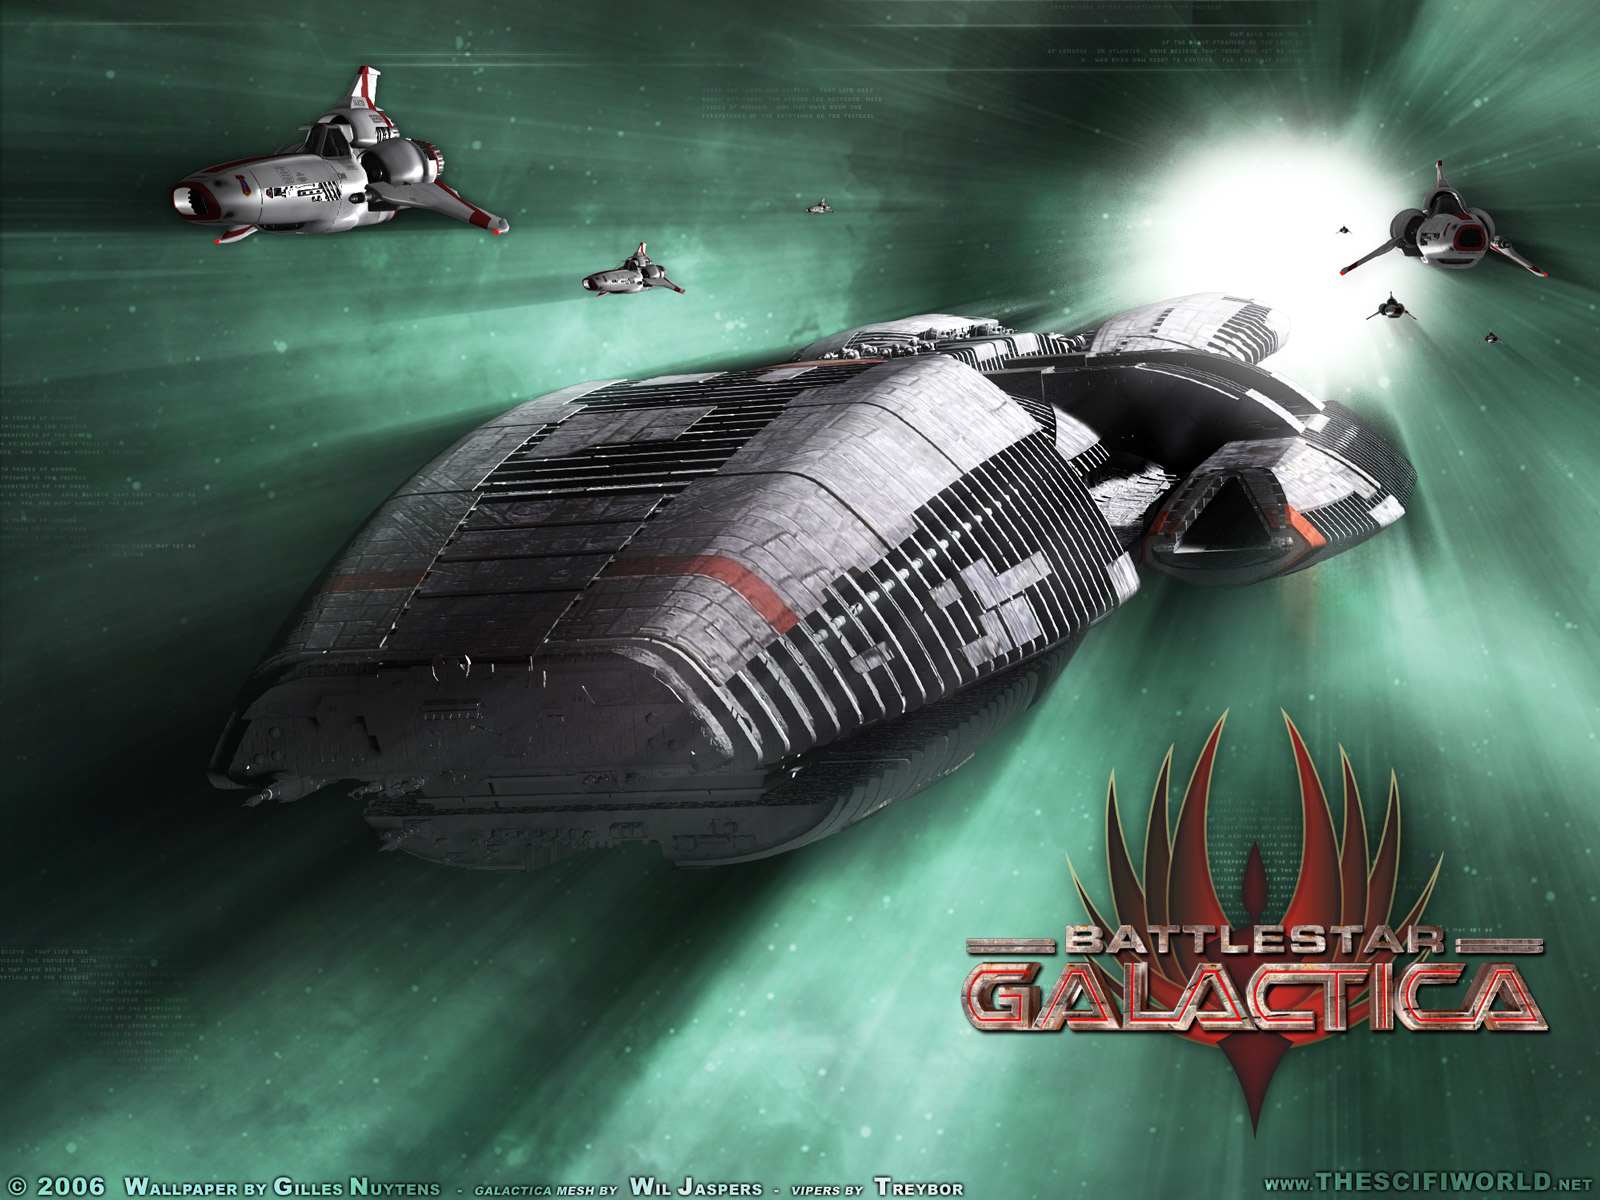 Battlestar Galactica 2004 , HD Wallpaper & Backgrounds